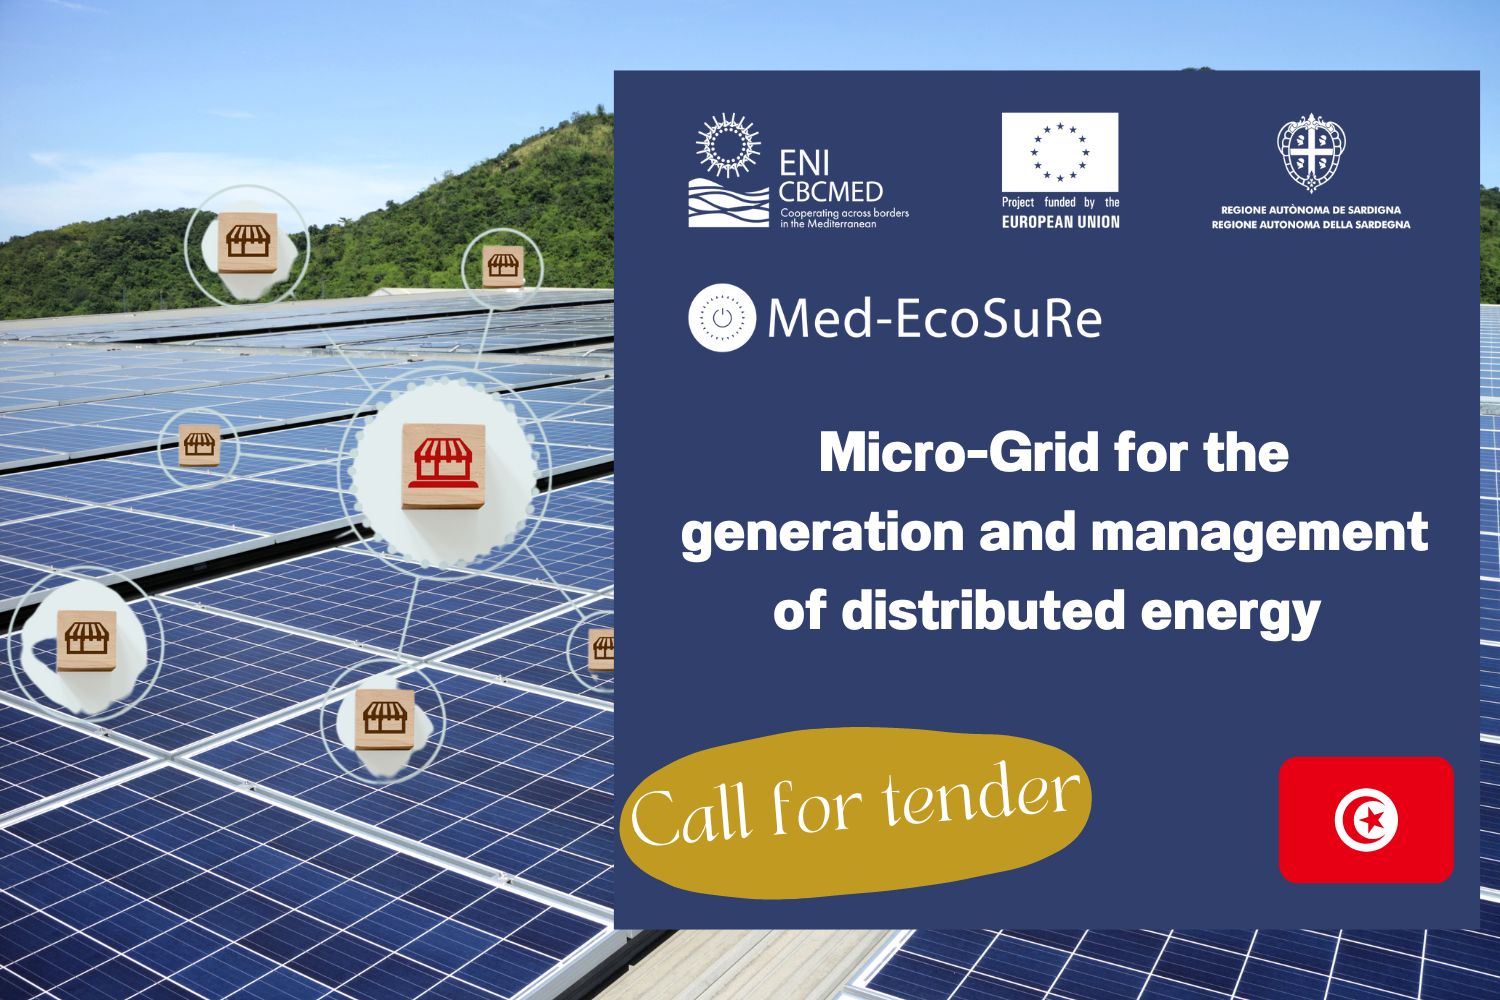 Med-EcoSuRe lance une consultation pour l’acquisition et l’installation d’un micro-réseau électrique pour la production et pour la gestion d’énergie distribuée en Tunisie